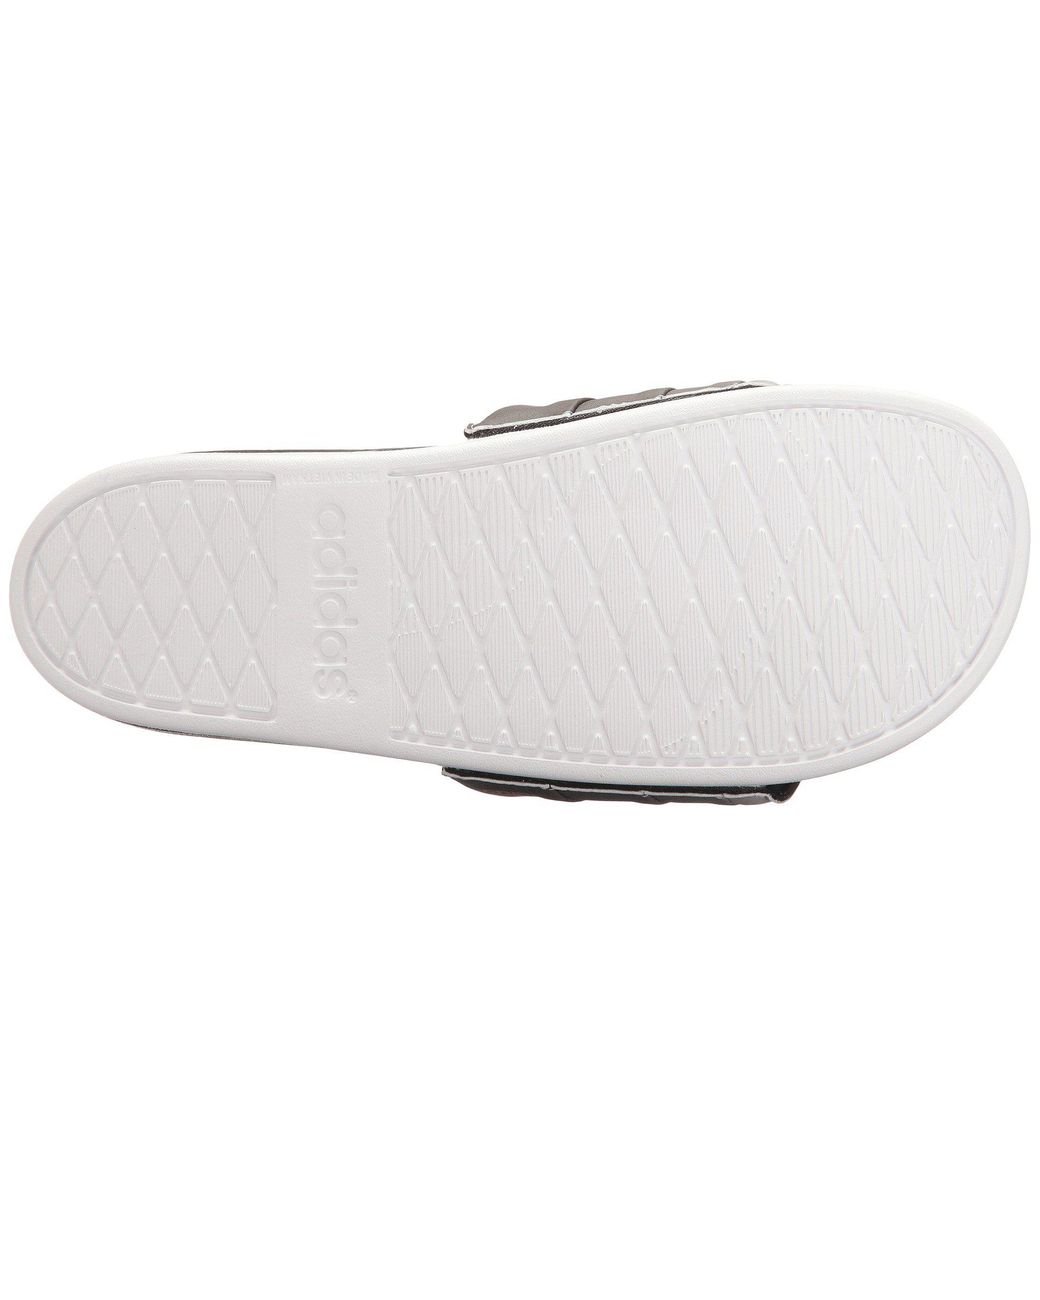 adidas Adilette Cloudfoam Ultra Armad (core Black/tech Rust  Metallic/footwear White) Women's Slide Shoes | Lyst